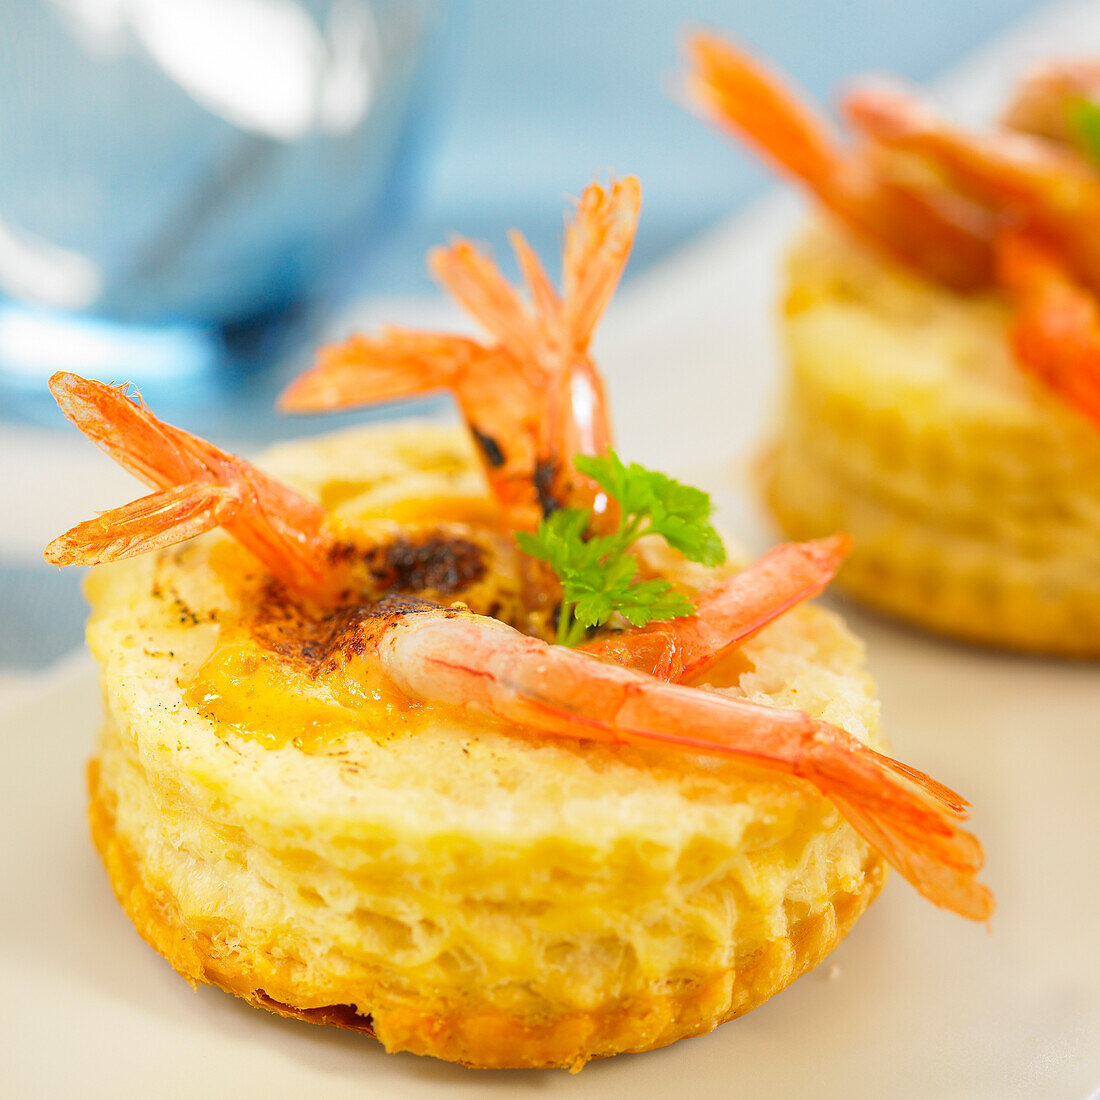 Shrimp puff pastry